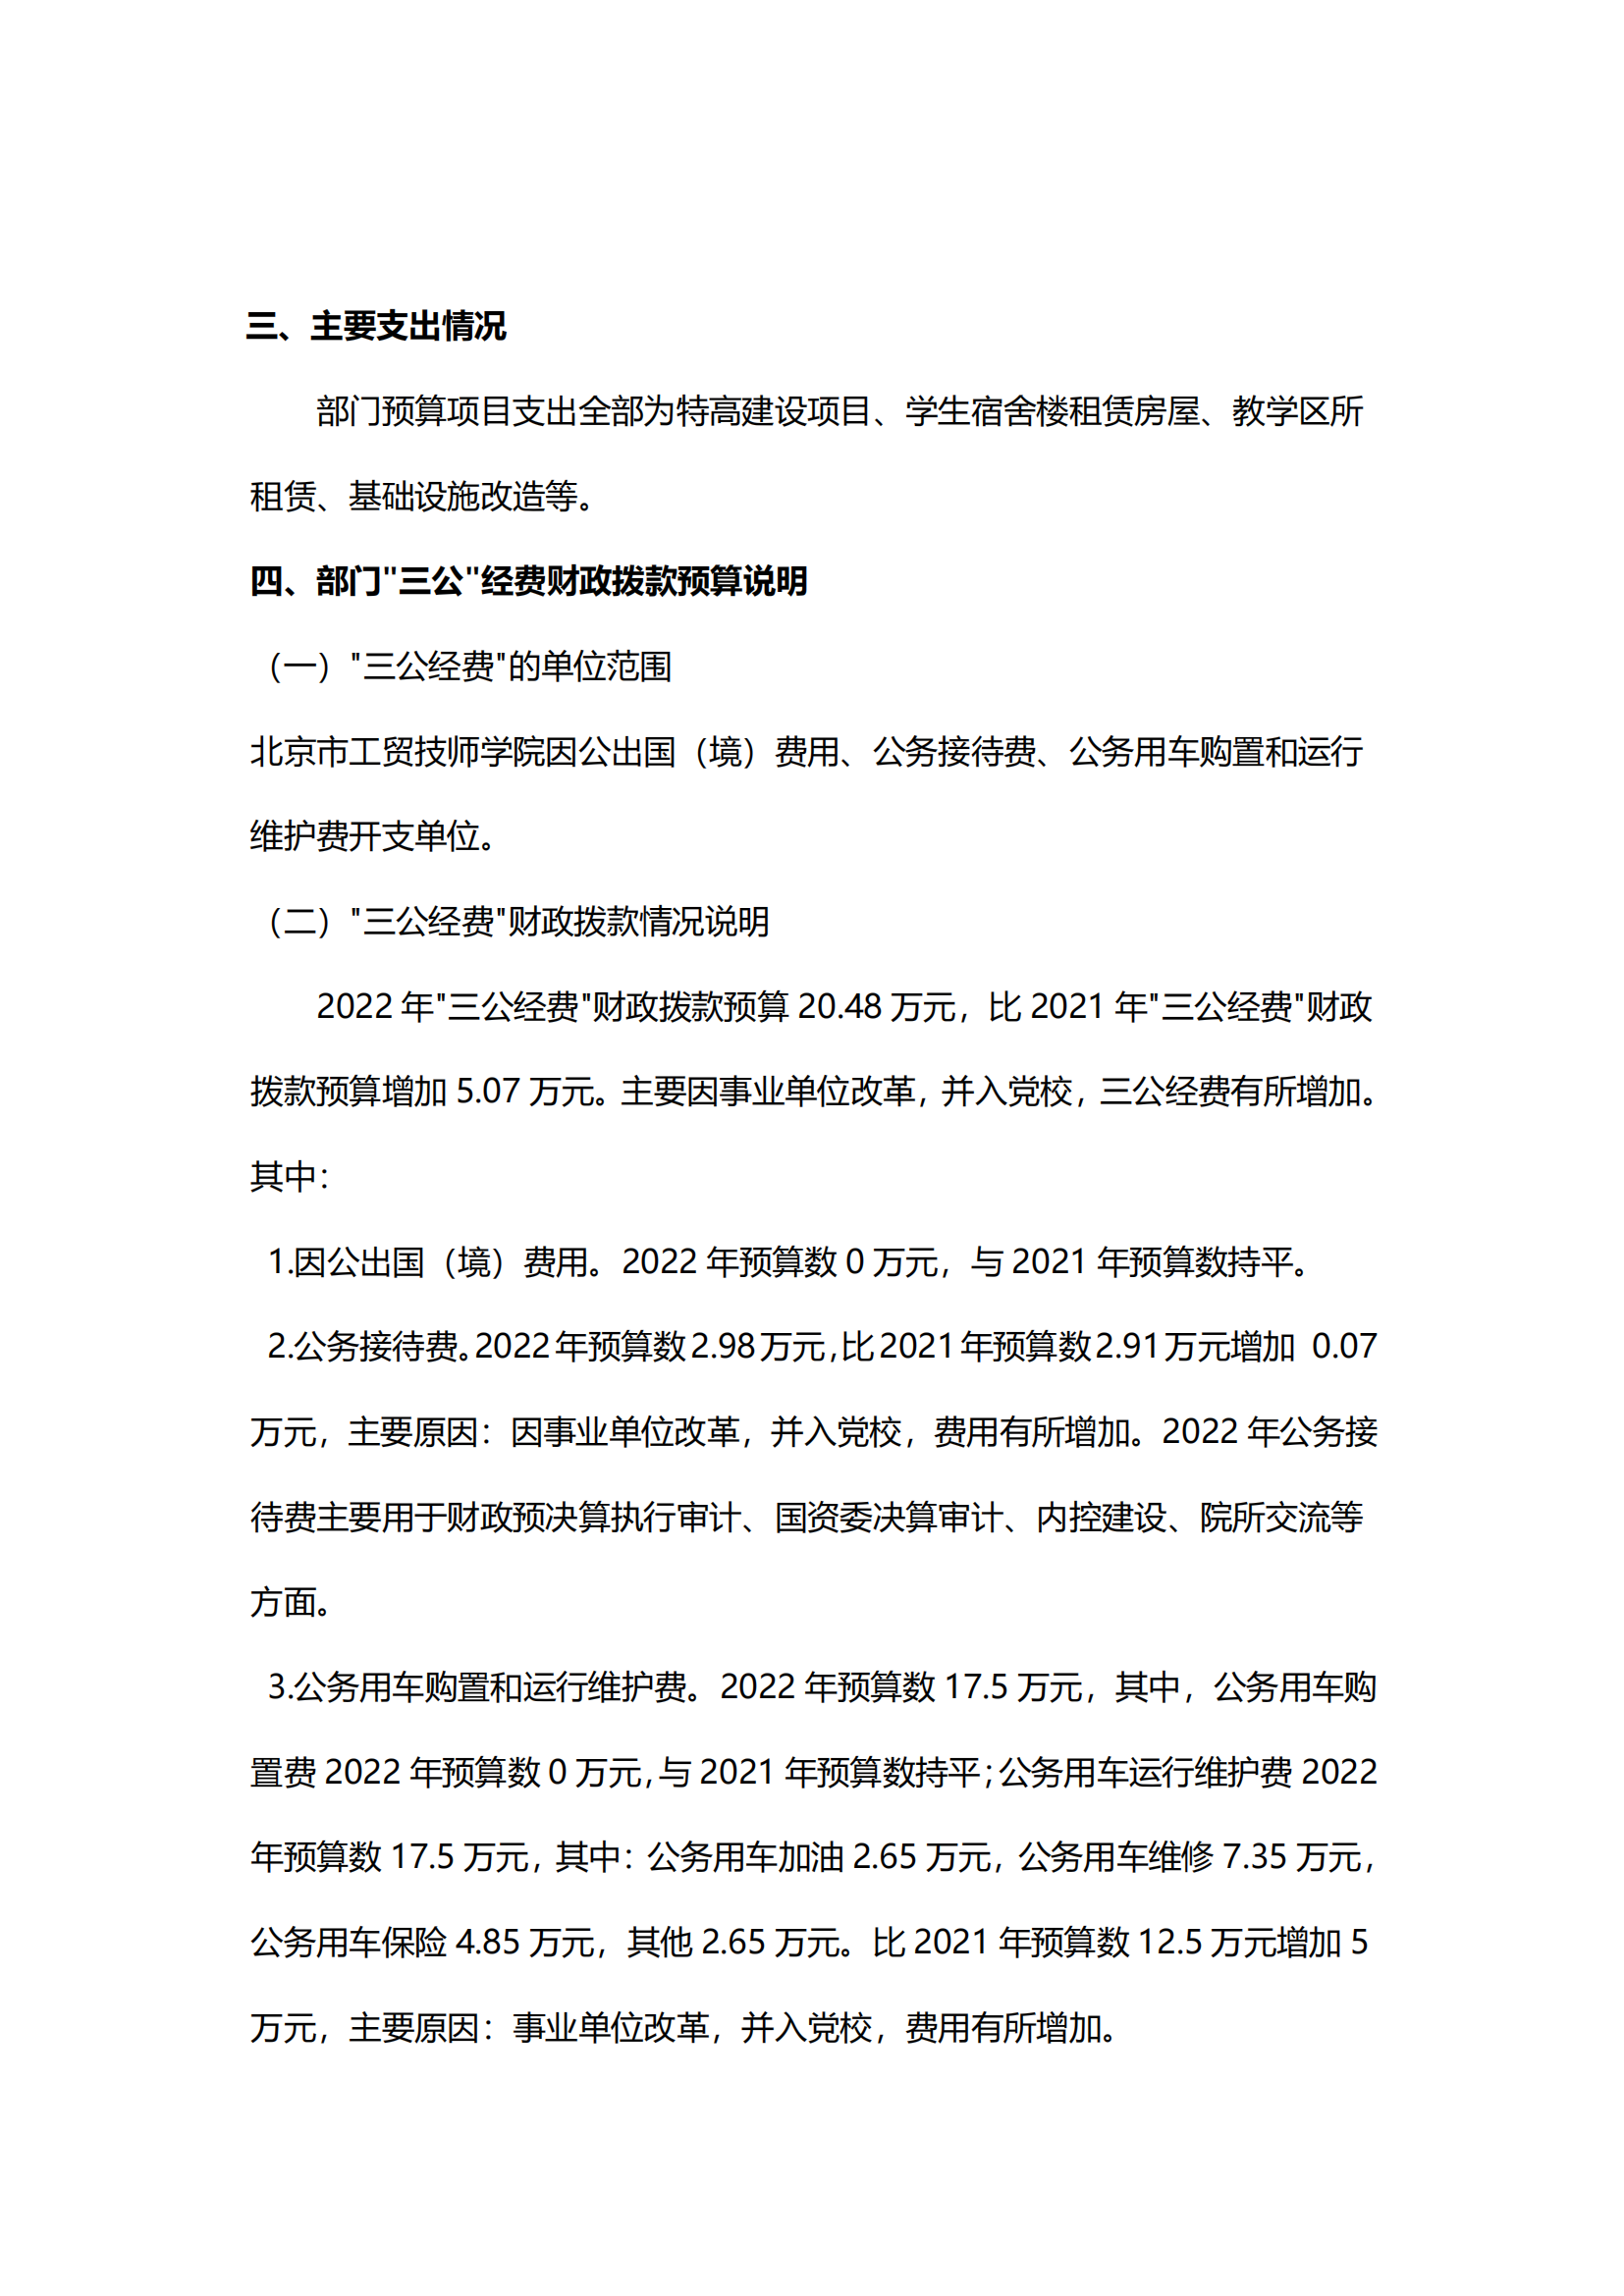 （新）北京市工贸技师学院2022年财政预算信息_05.png